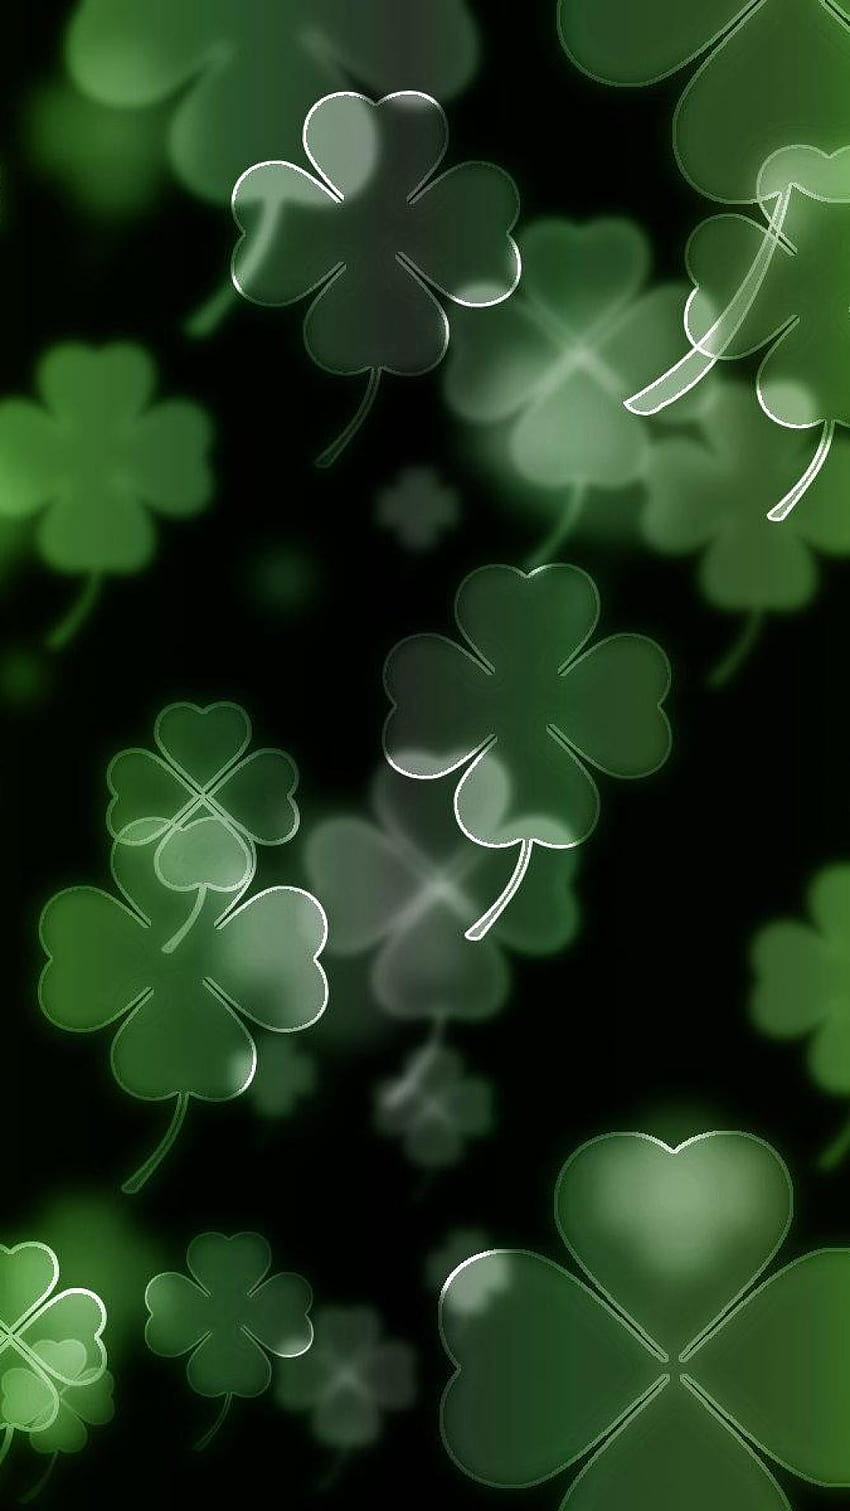 Clovers four leaf clover irish luck, lucky HD phone wallpaper